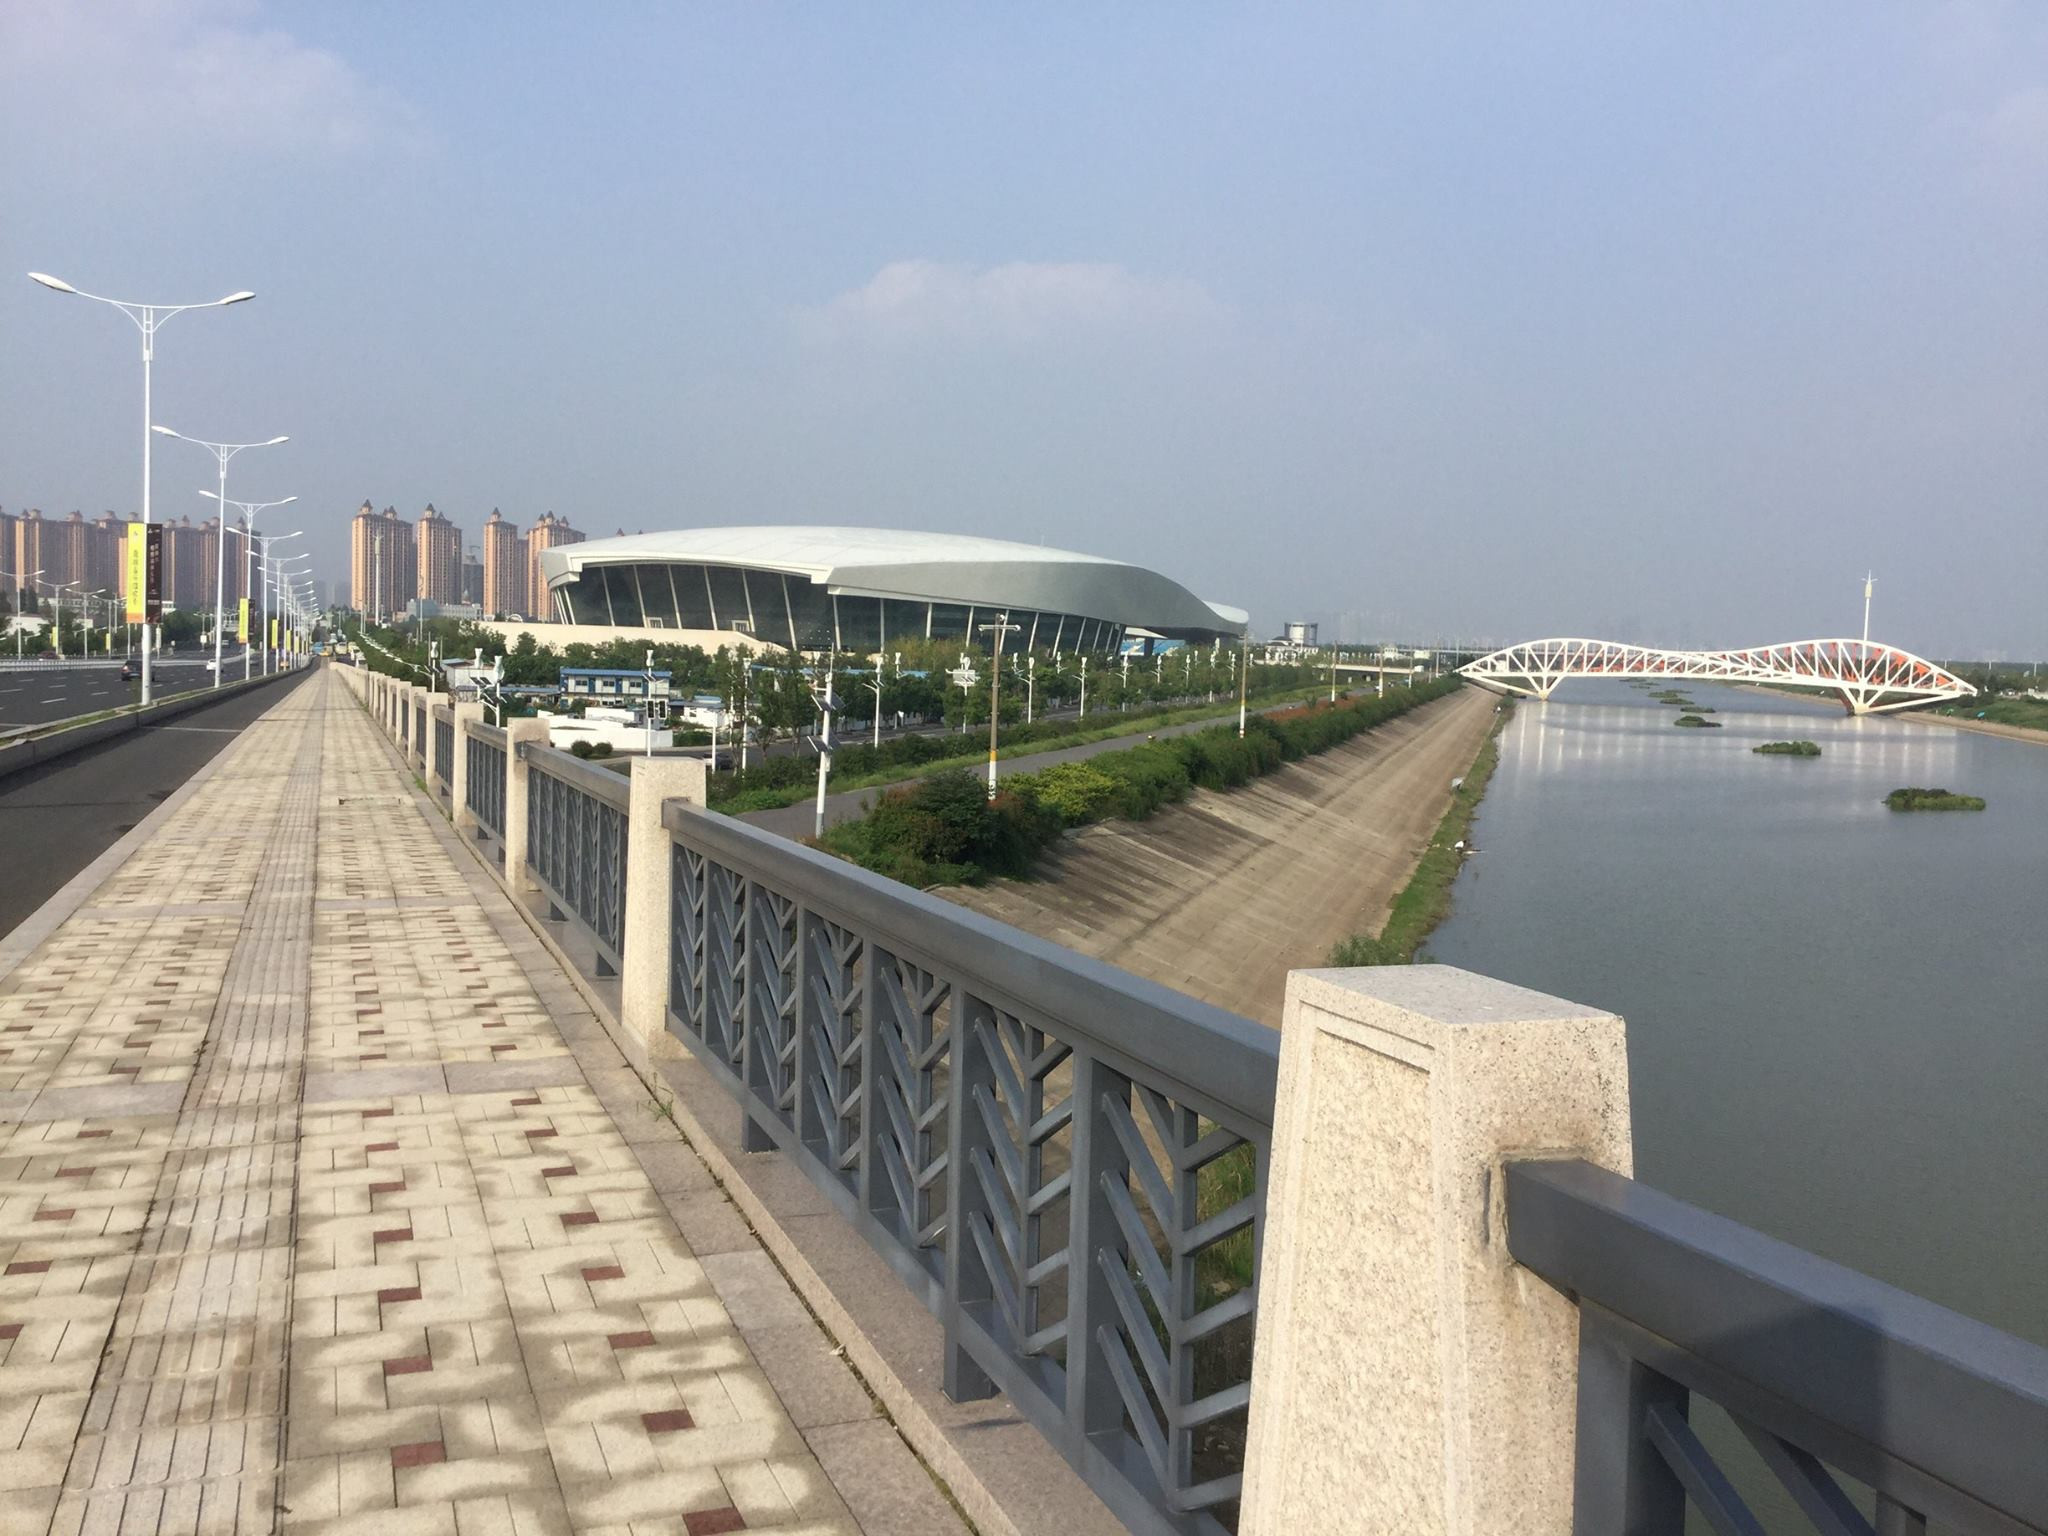 Nanjing to host first World Skate Skateboarding Park World Championships